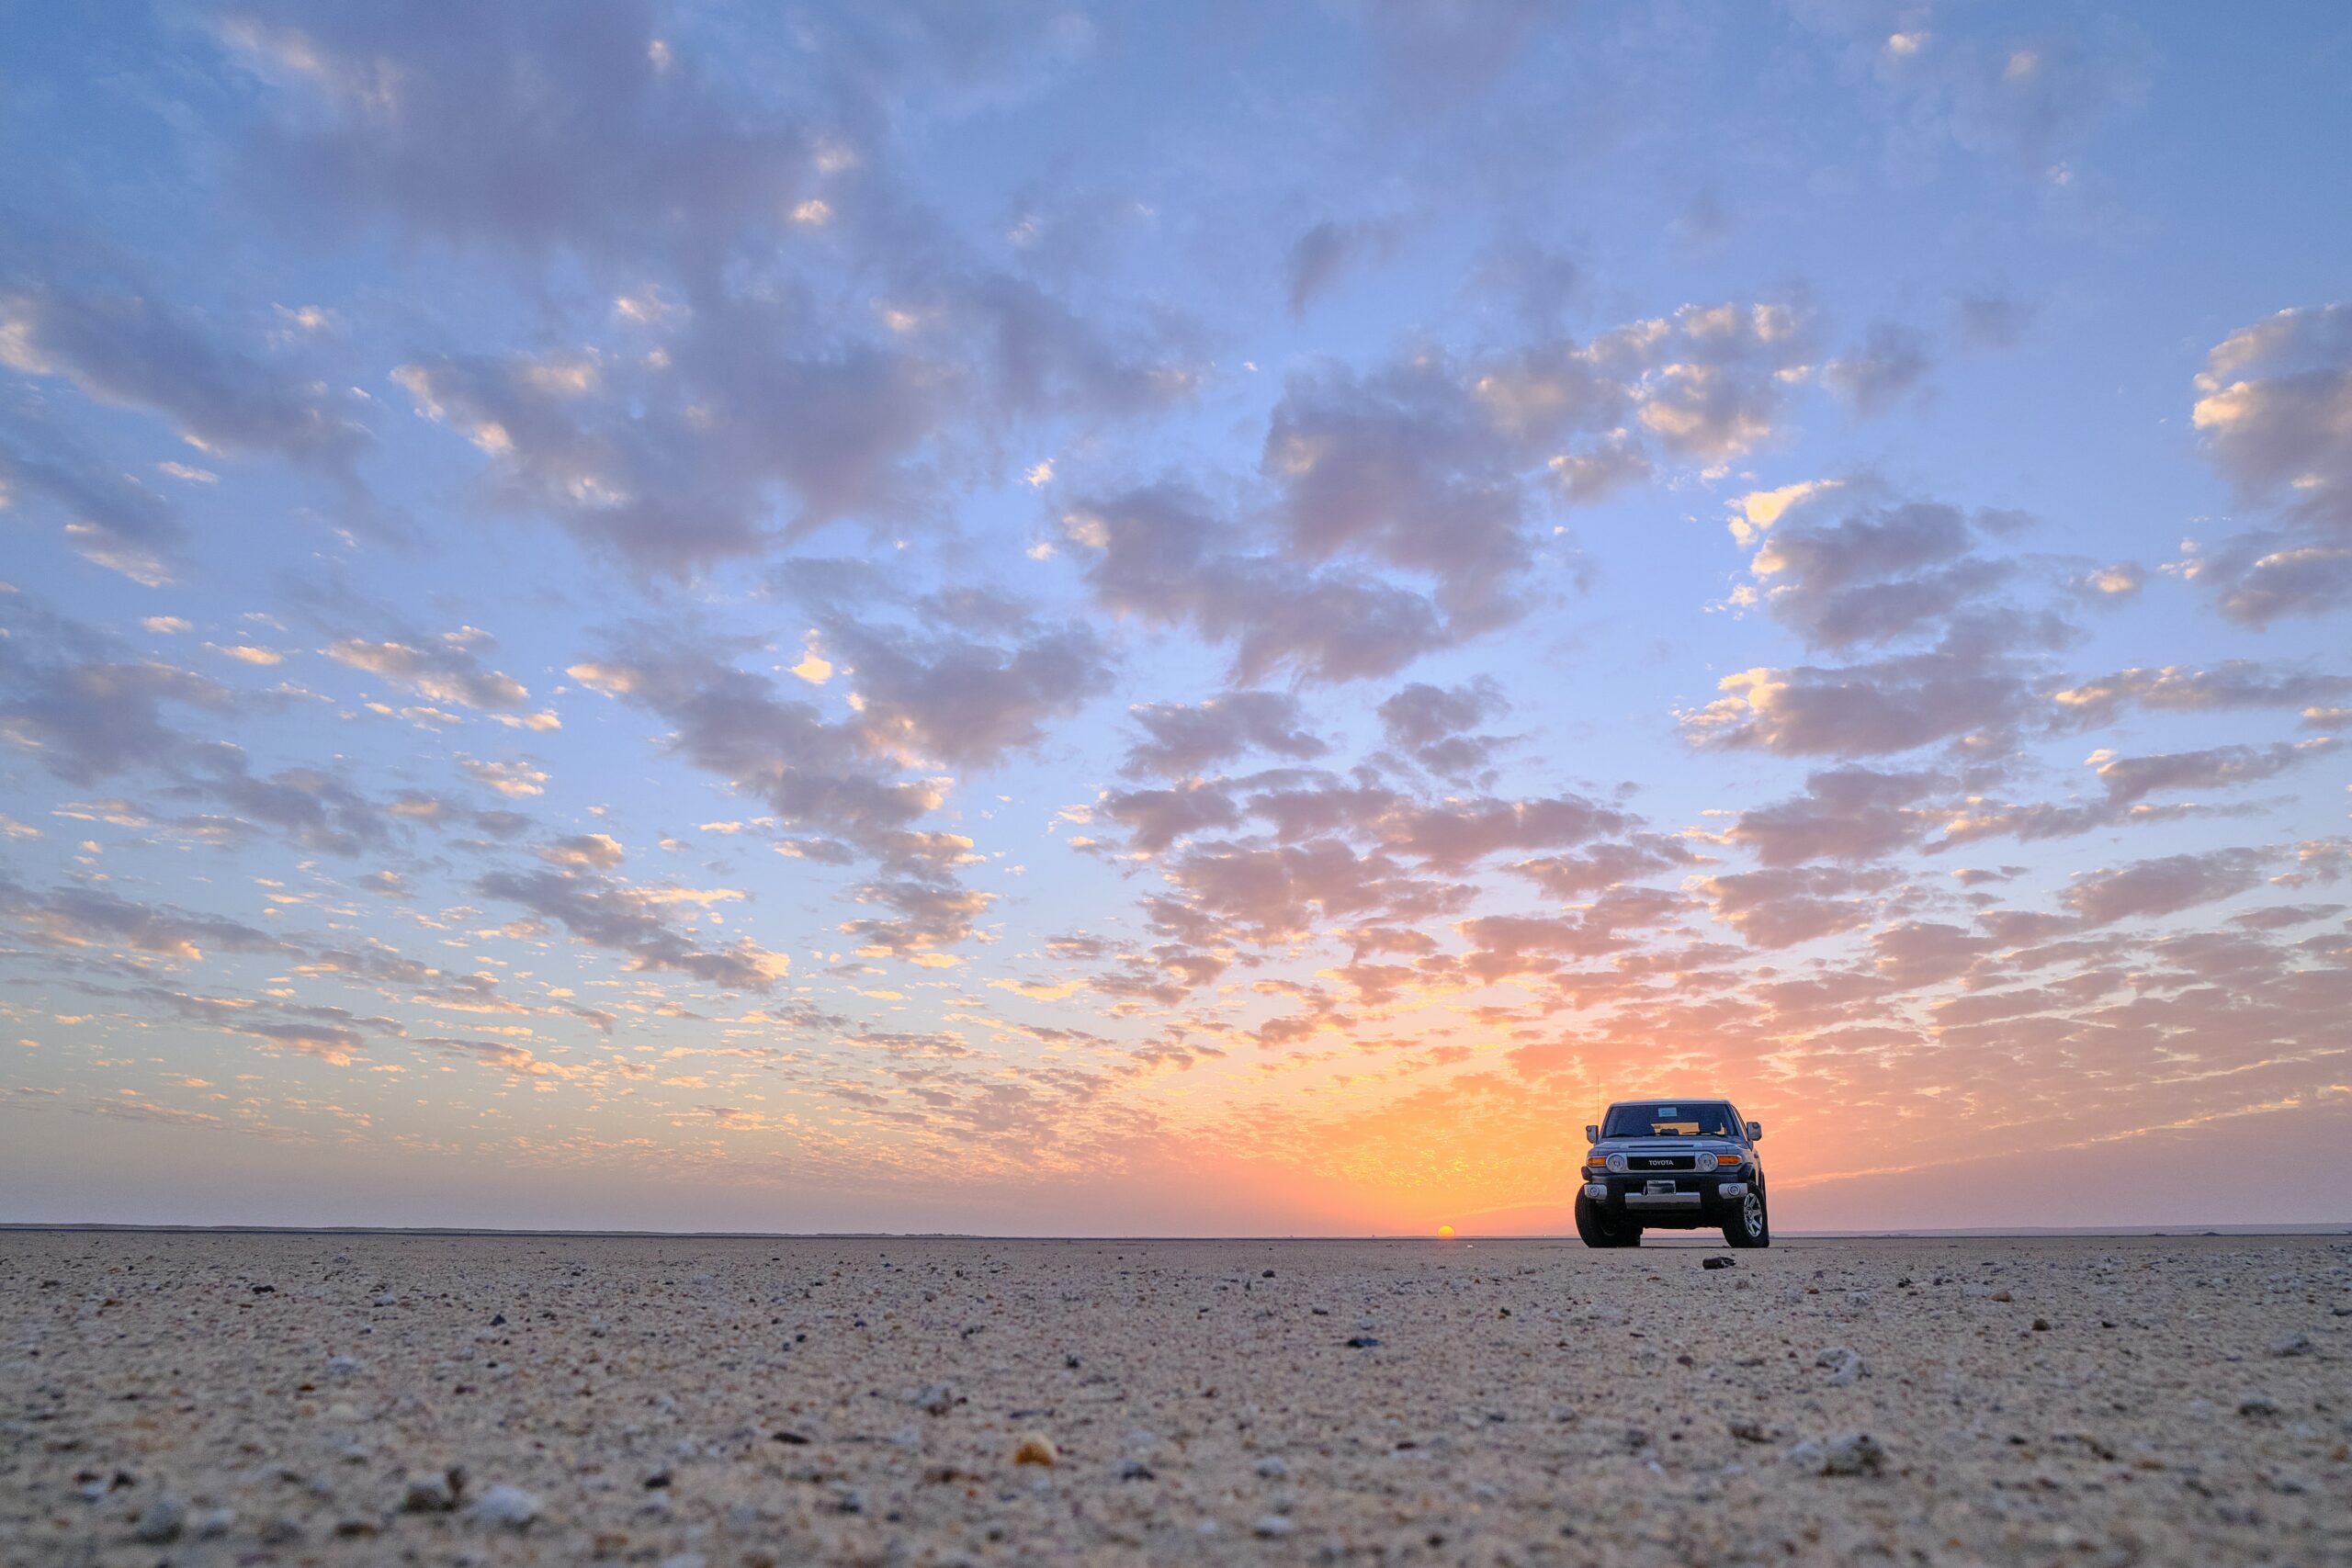 Explorer le désert au koweït